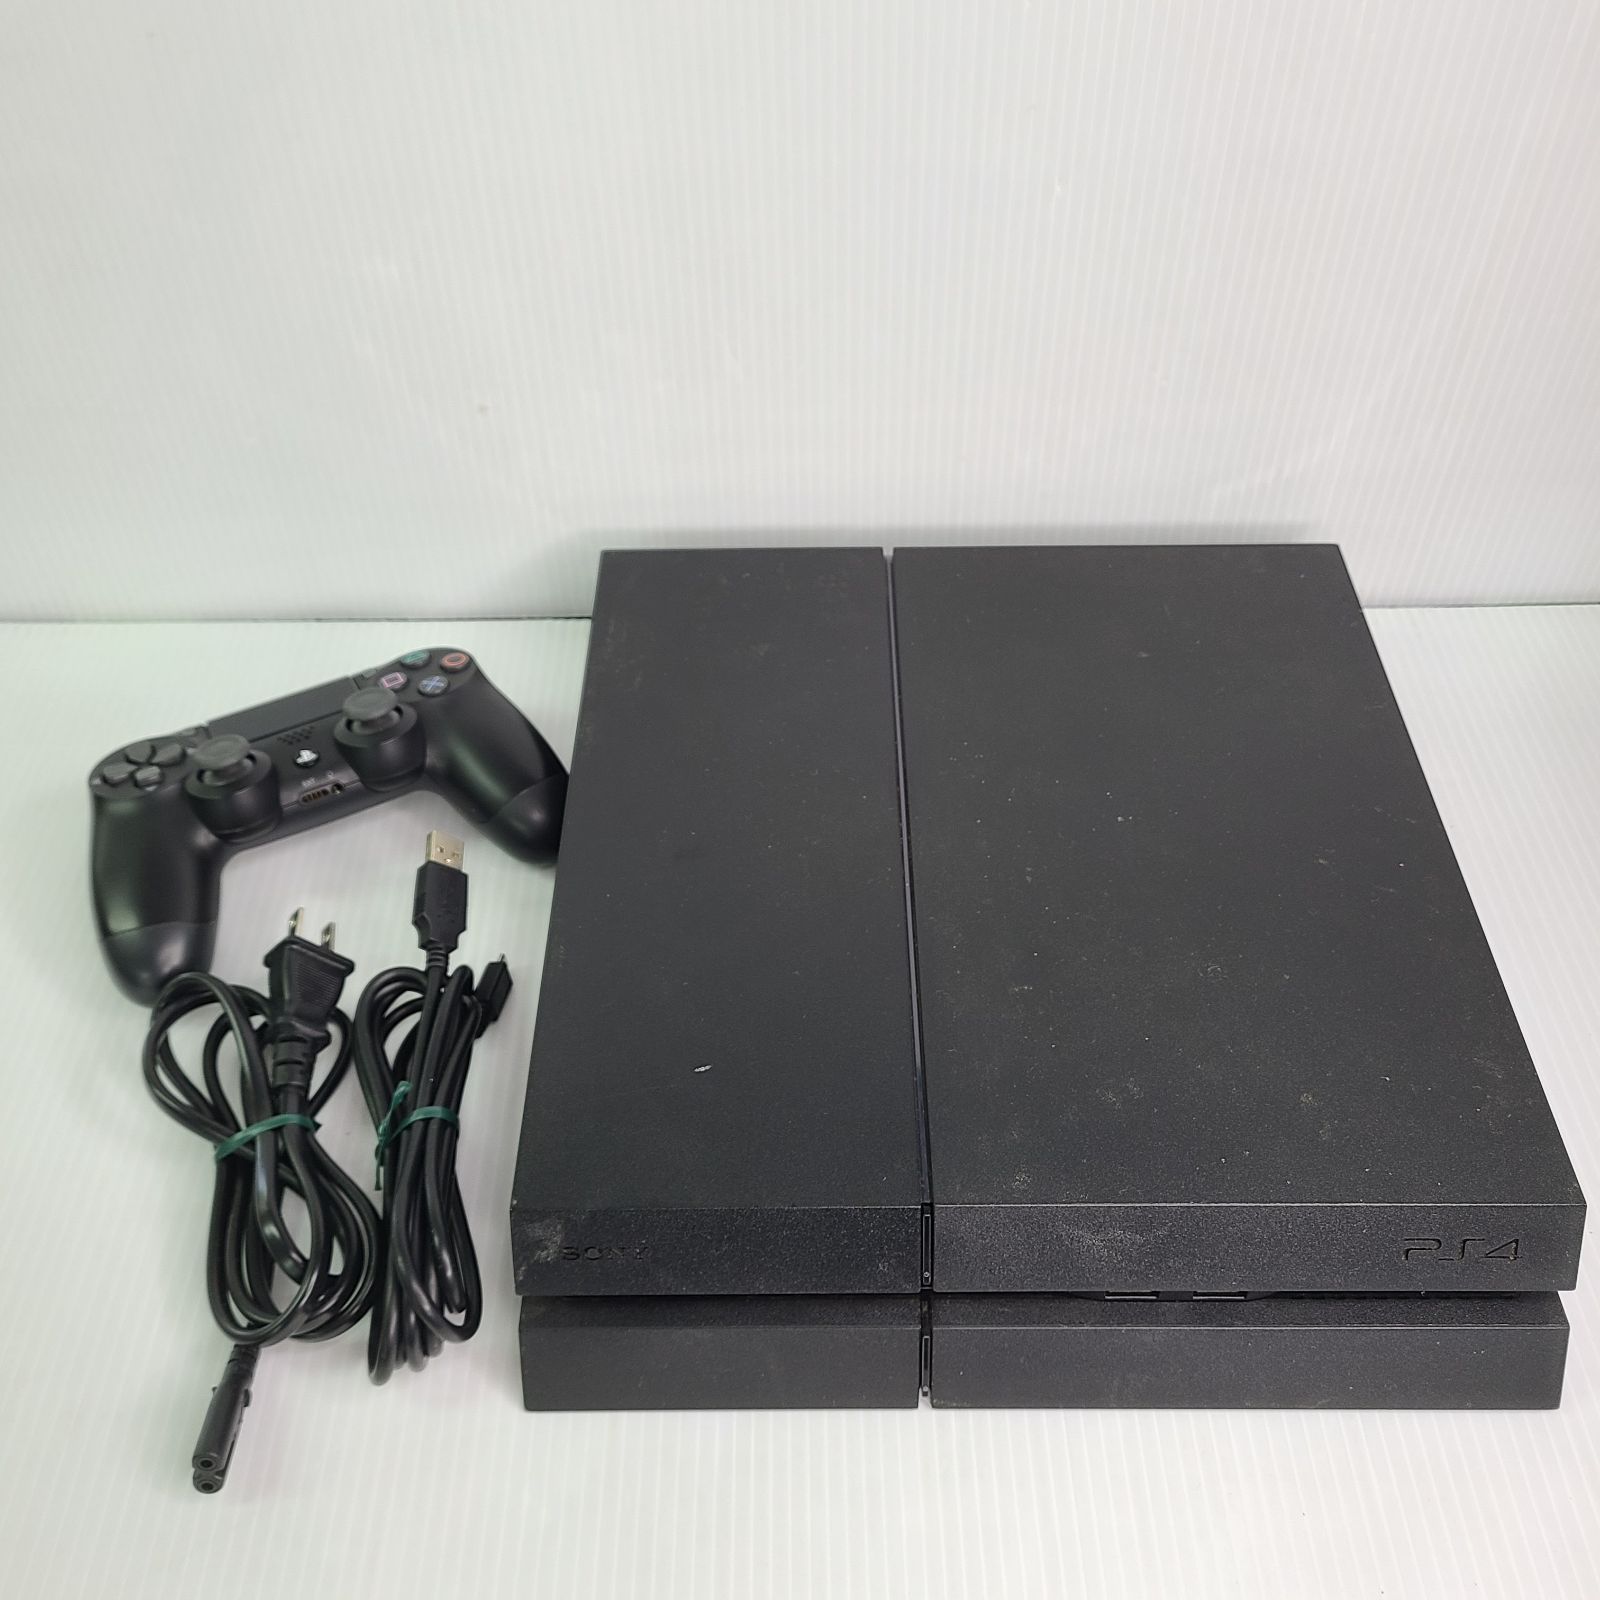 安さ一番PlayStation4 CUH-1200B Jet Black 送料無料 PS4本体